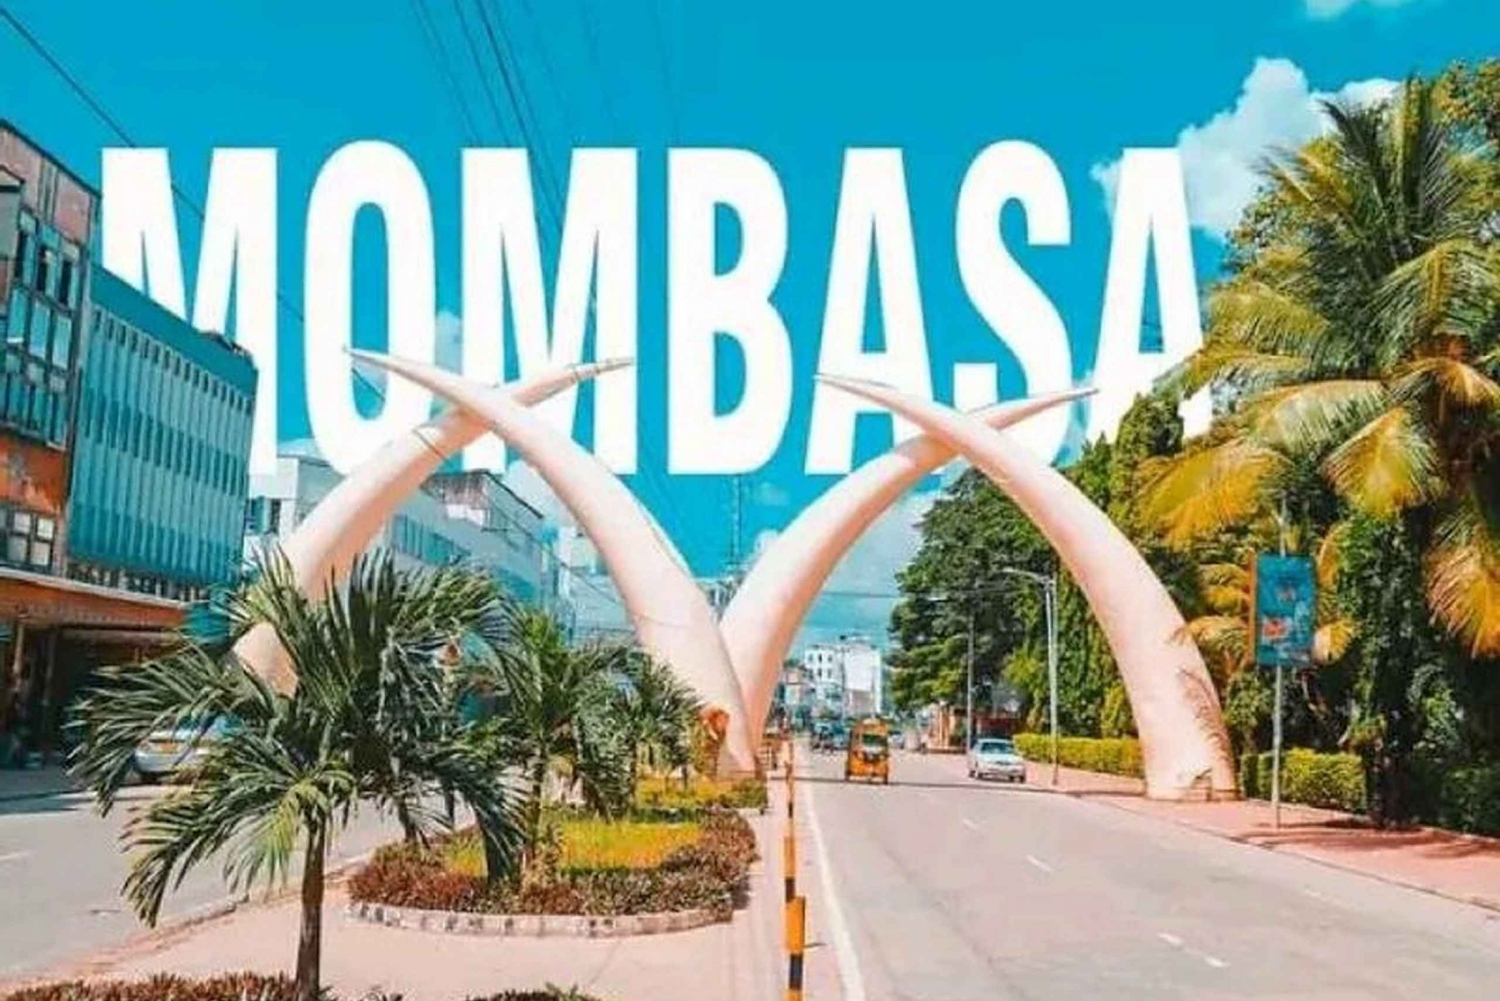 Recorrido histórico a pie por la ciudad de Mombasa.